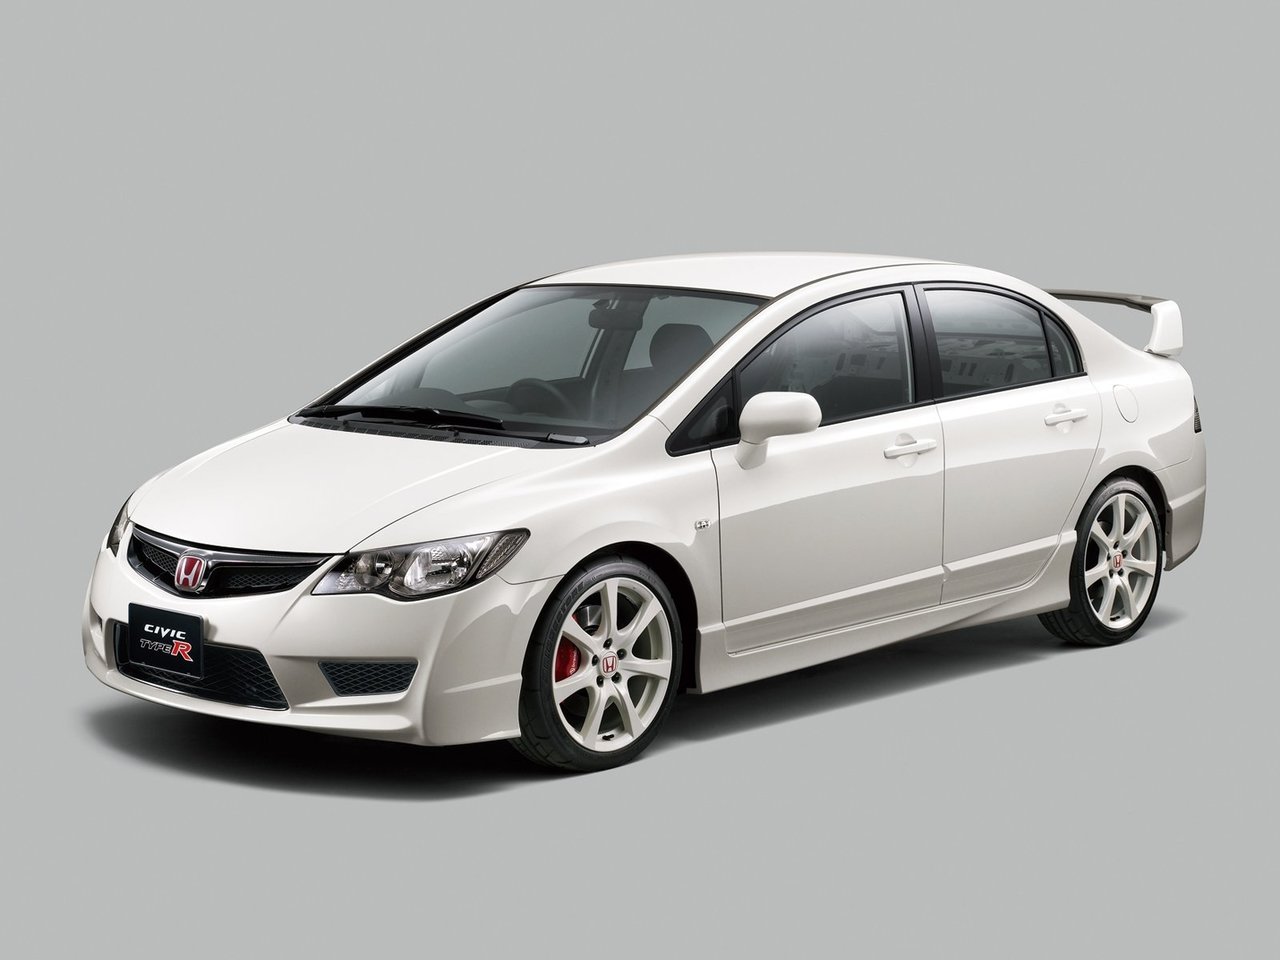 Расход газа одной комплектации седана Honda Civic Type R. Разница стоимости заправки газом и бензином. Автономный пробег до и после установки ГБО.